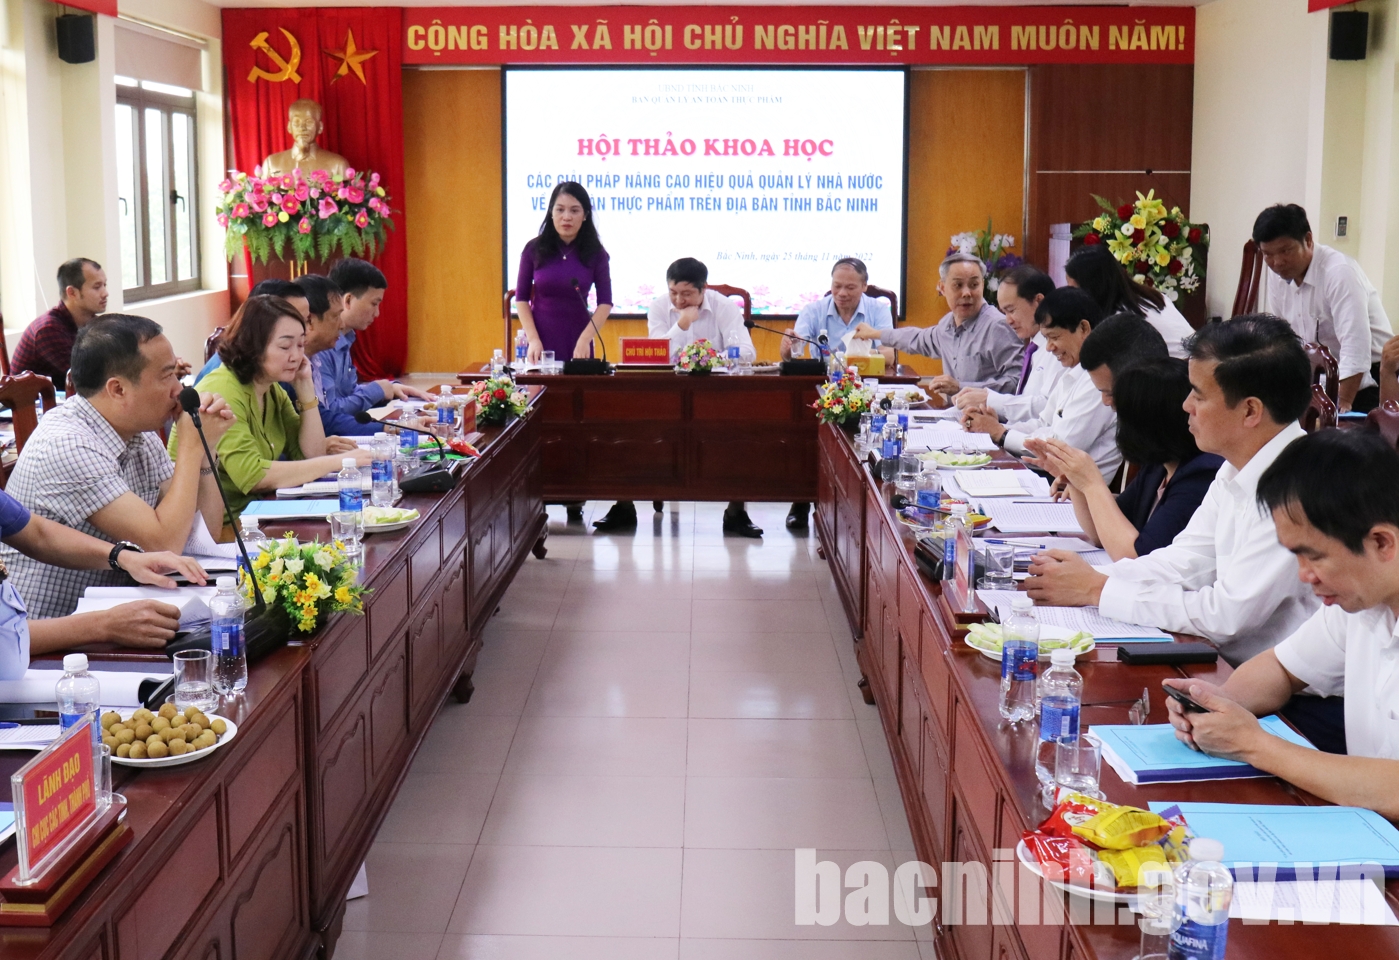 Hội thảo khoa học “Các giải pháp nâng cao hiệu quả quản lý Nhà nước về ATTP trên địa bàn tỉnh Bắc Ninh”